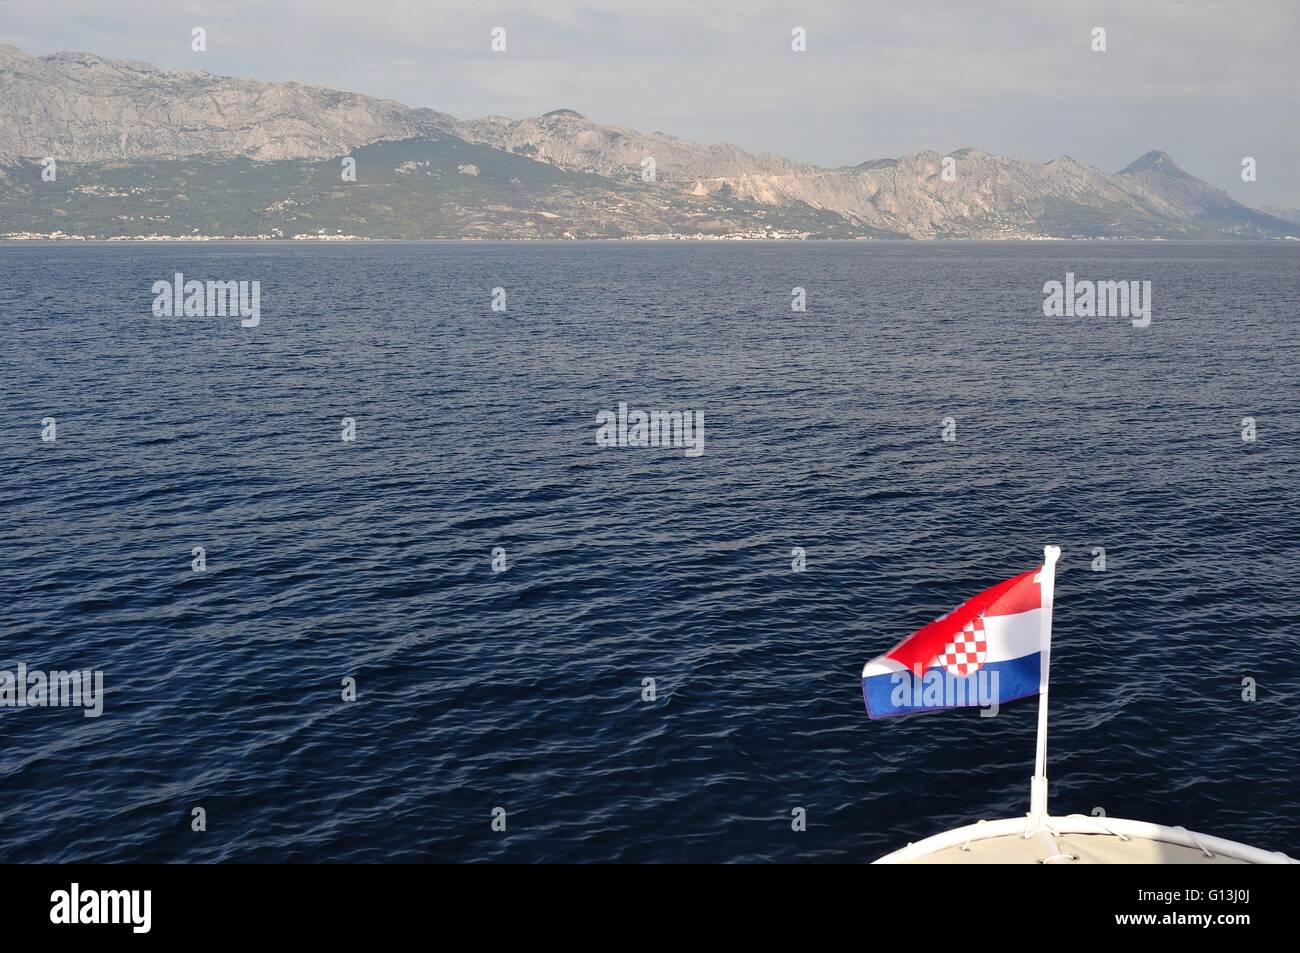 Mare Adriatico in Croazia con il monte Biokovo in background. Vista dalla nave. La bandiera croata in basso a destra dell'immagine Foto Stock